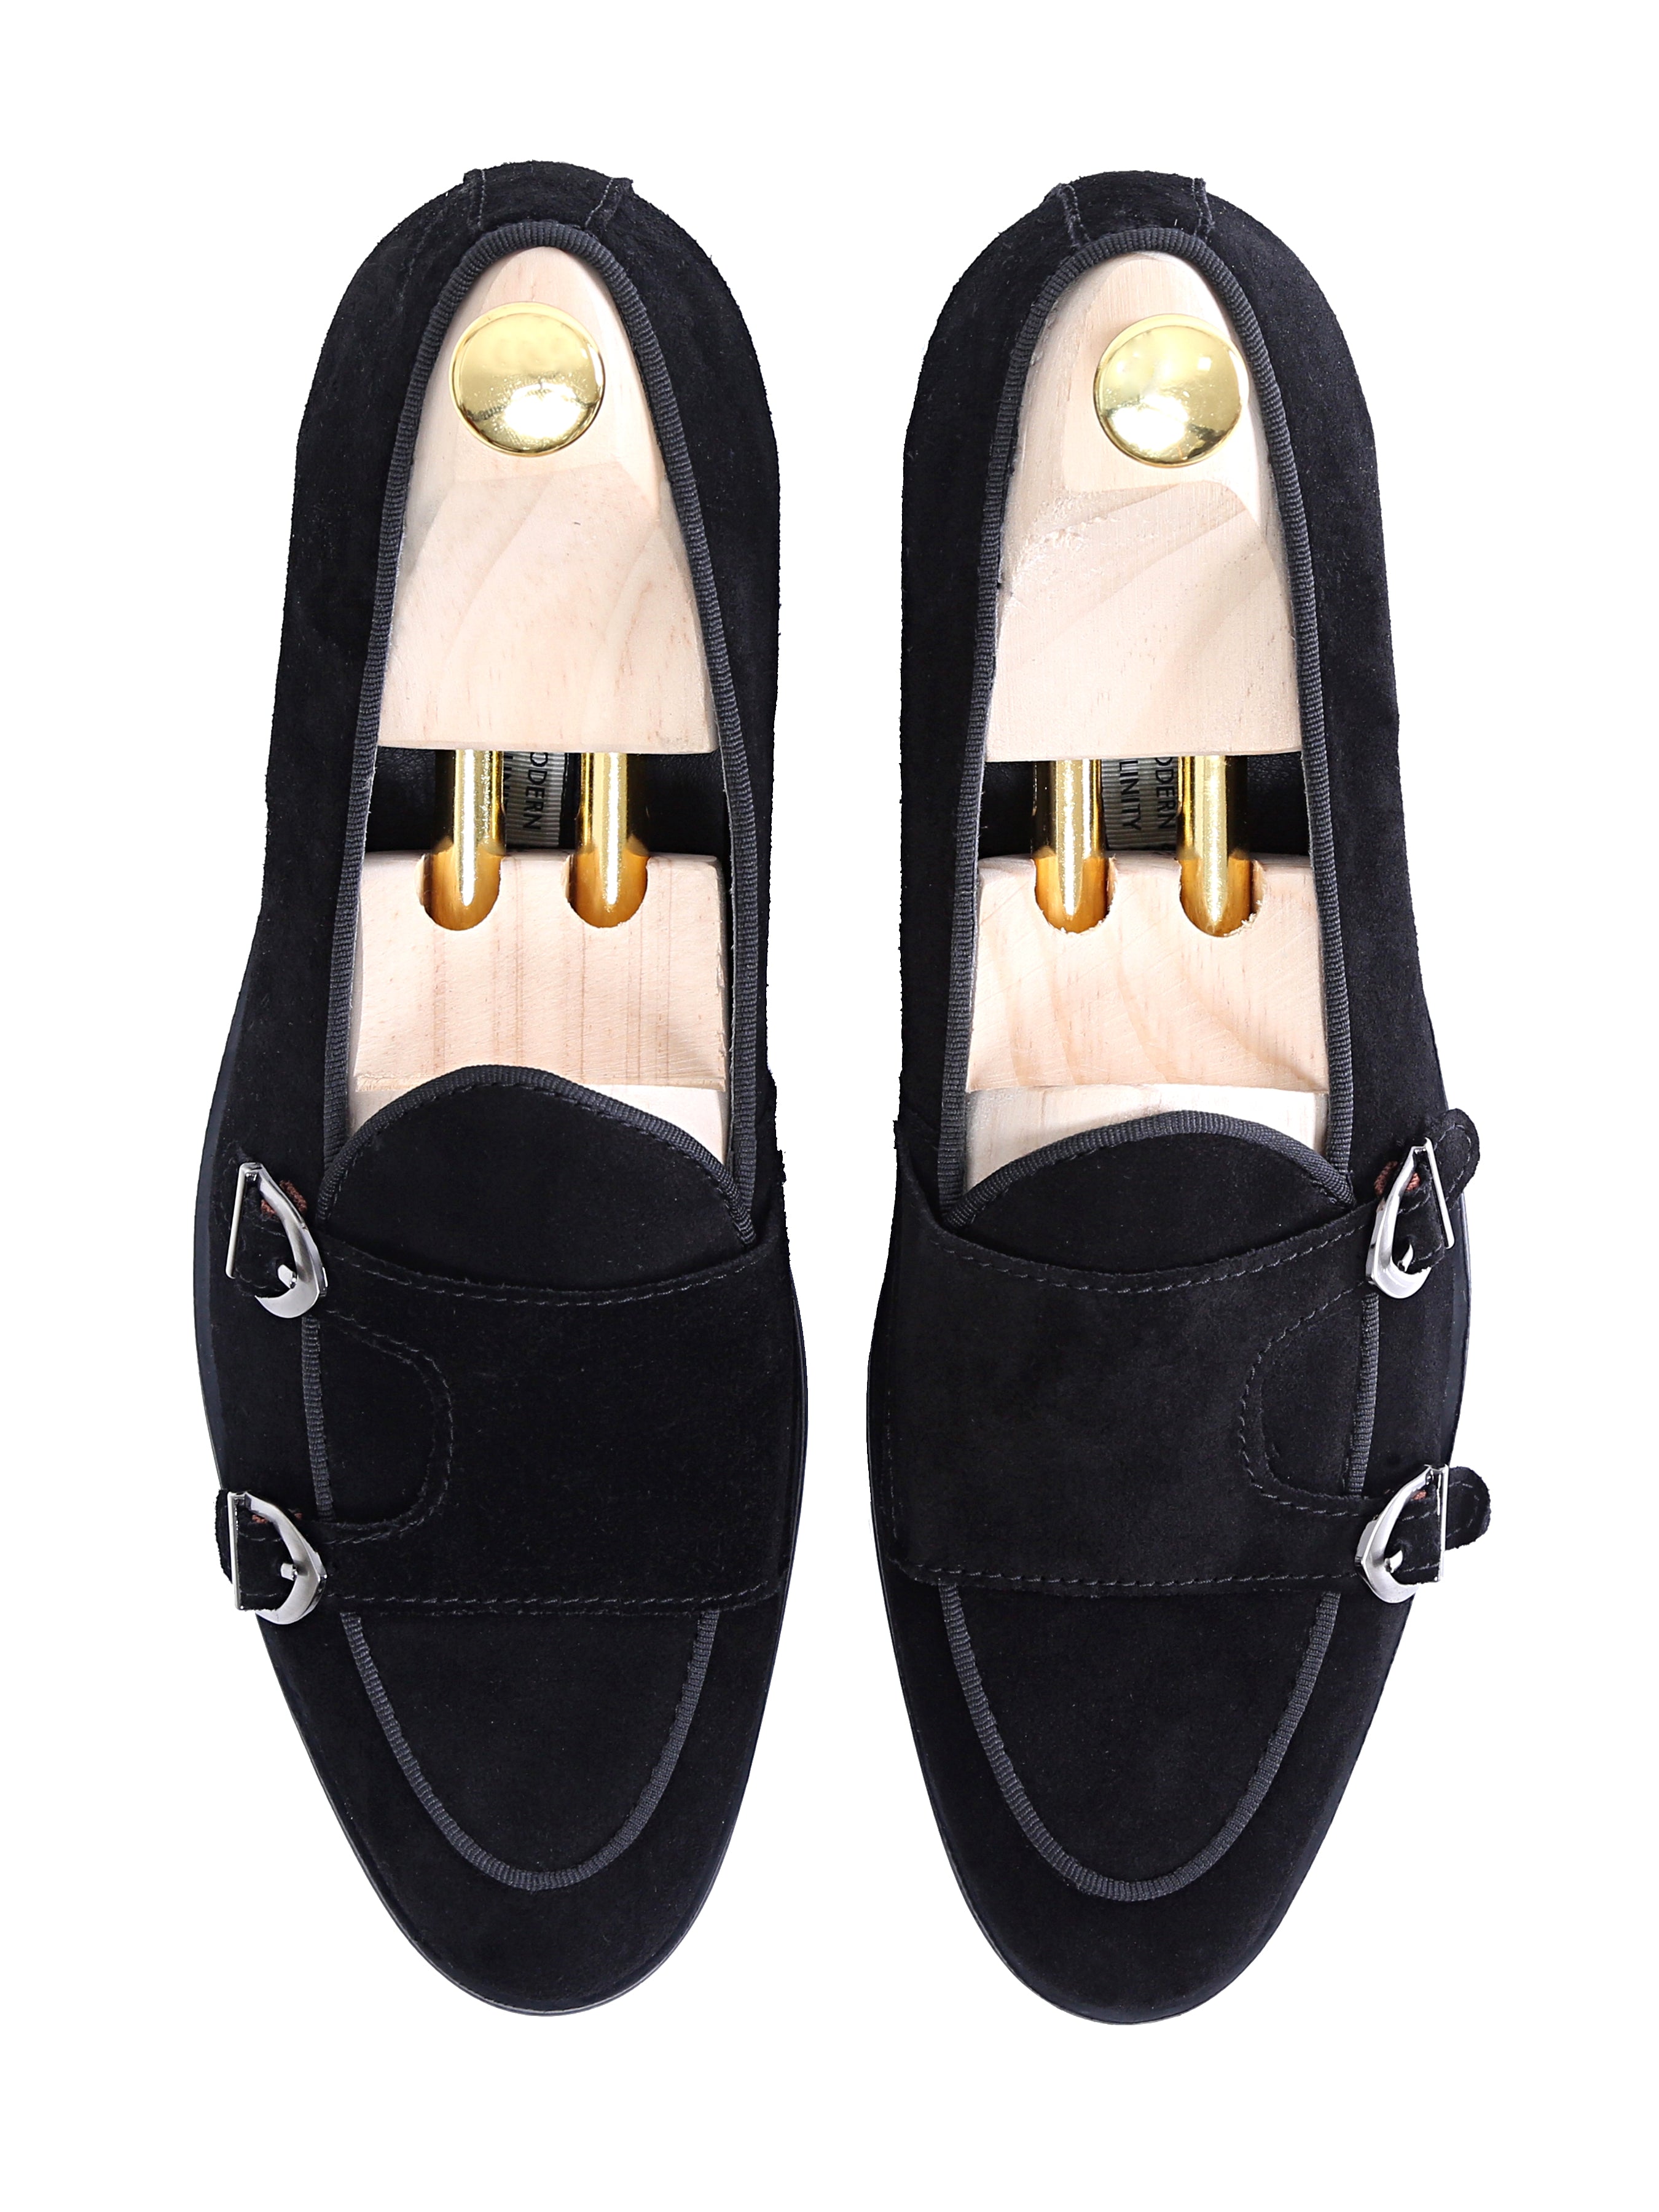 black suede monk shoes